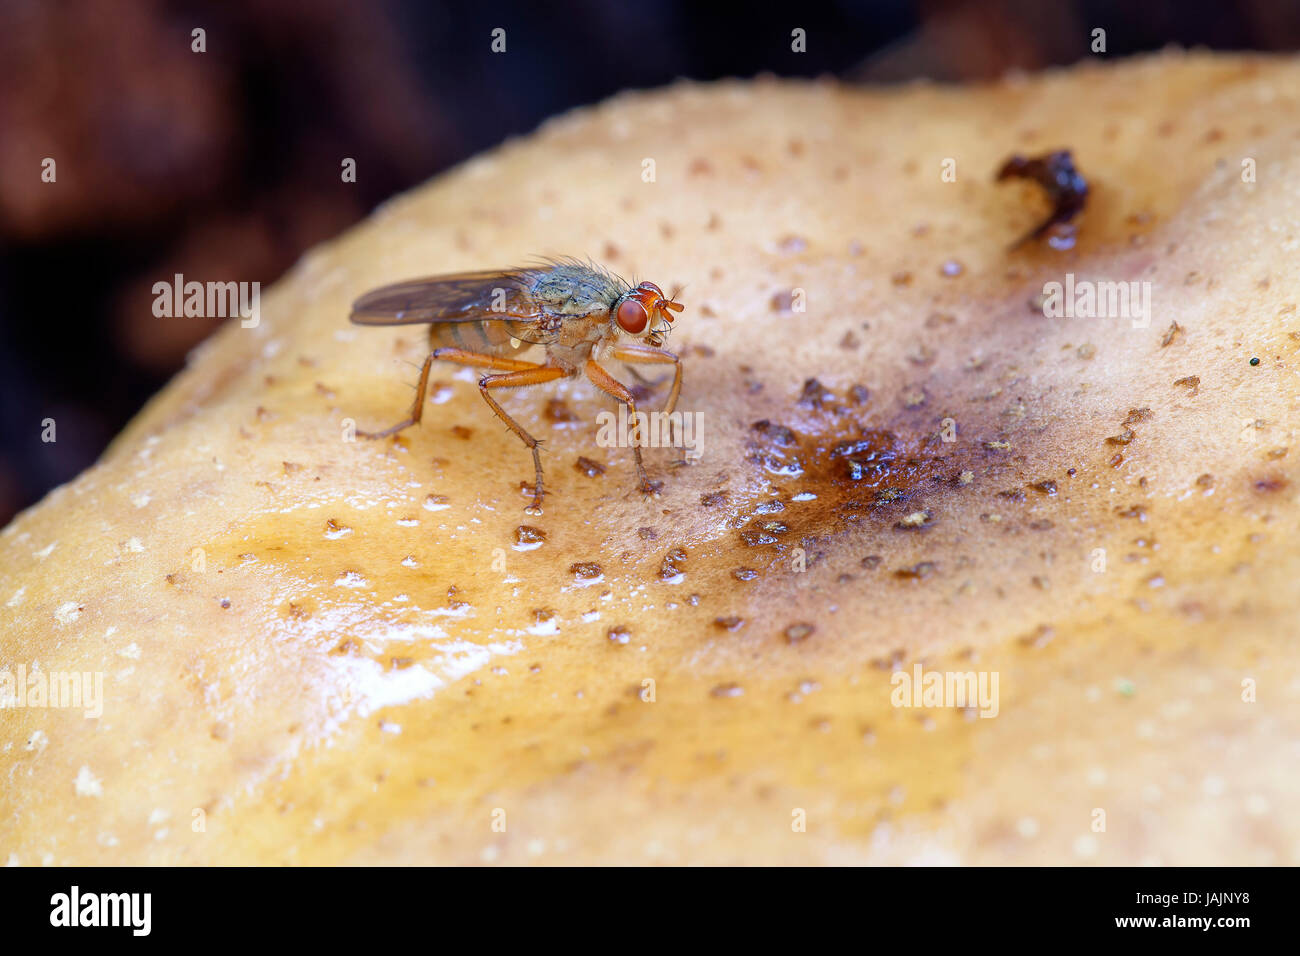 Scheufliege - Heleomyzidae auf einem Pilz - Makroaufnahme Stock Photo